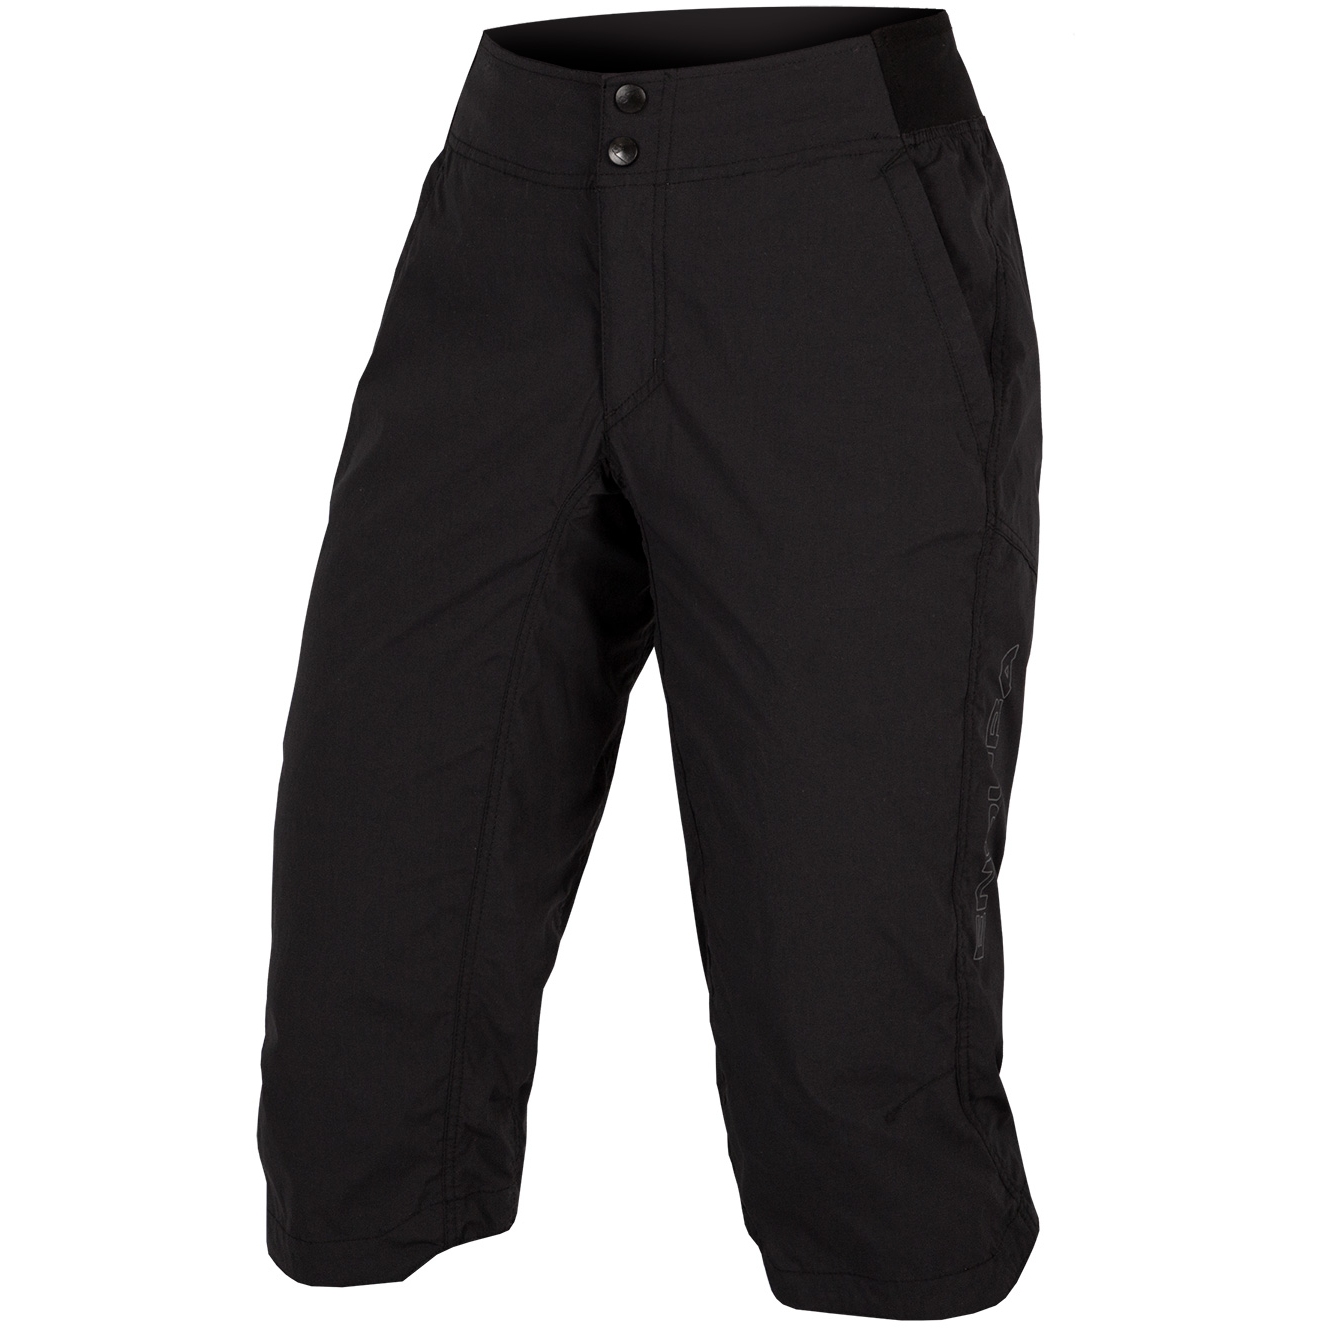 Produktbild von Endura Hummvee Lite 3/4 Shorts Damen - black